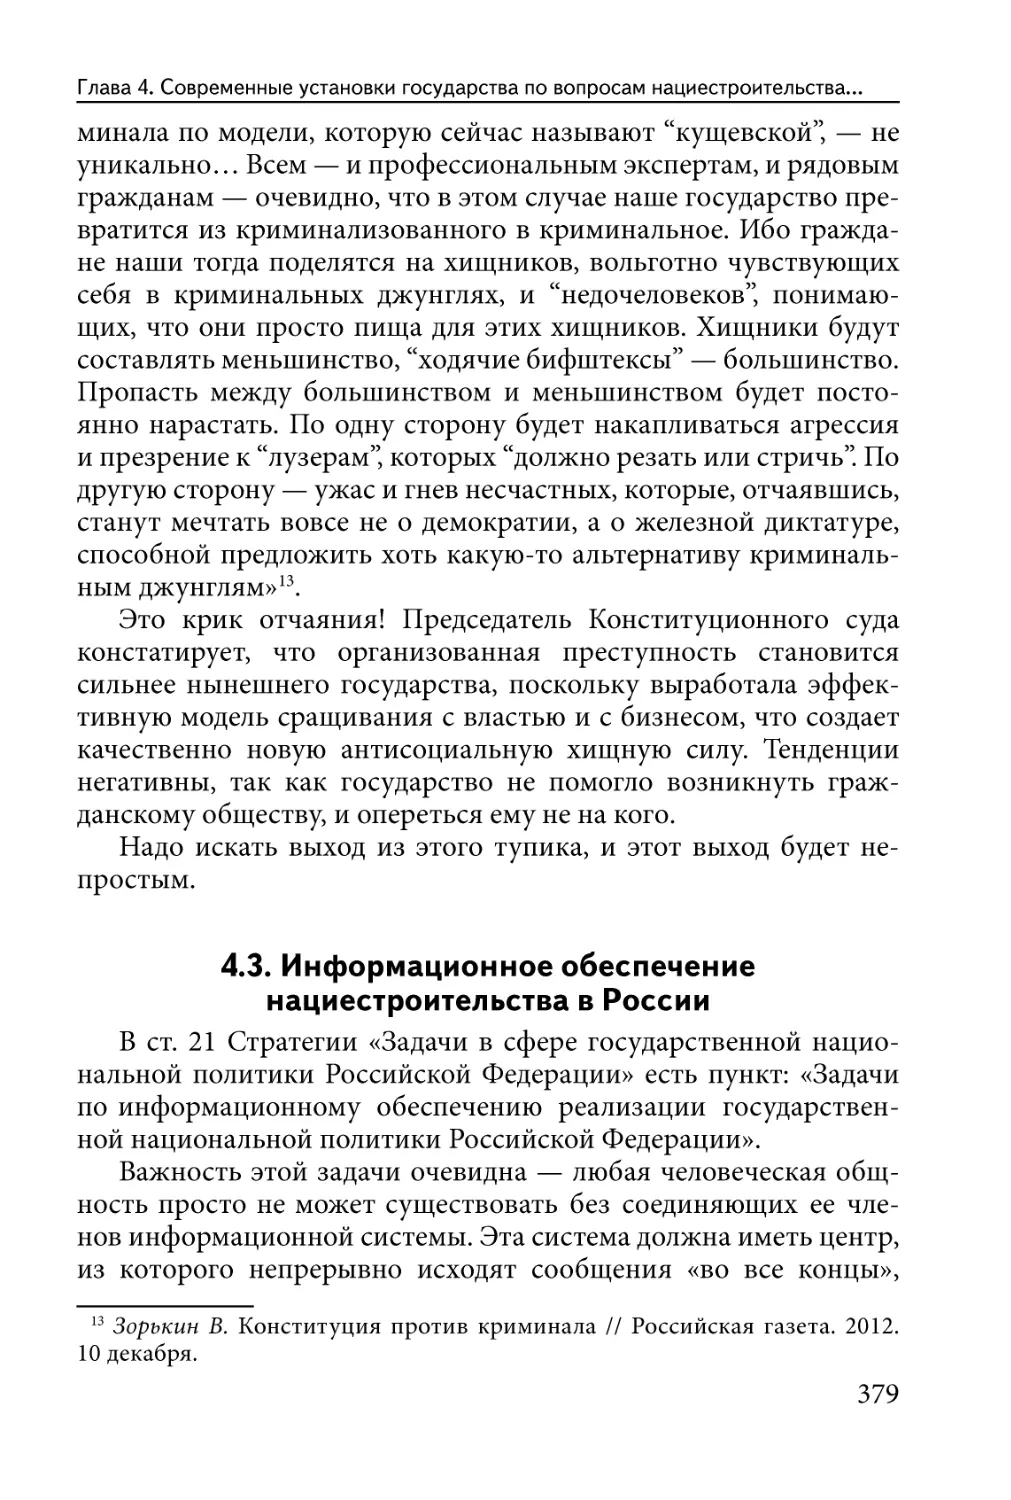 4.3. Информационное обеспечение нациестроительства в России